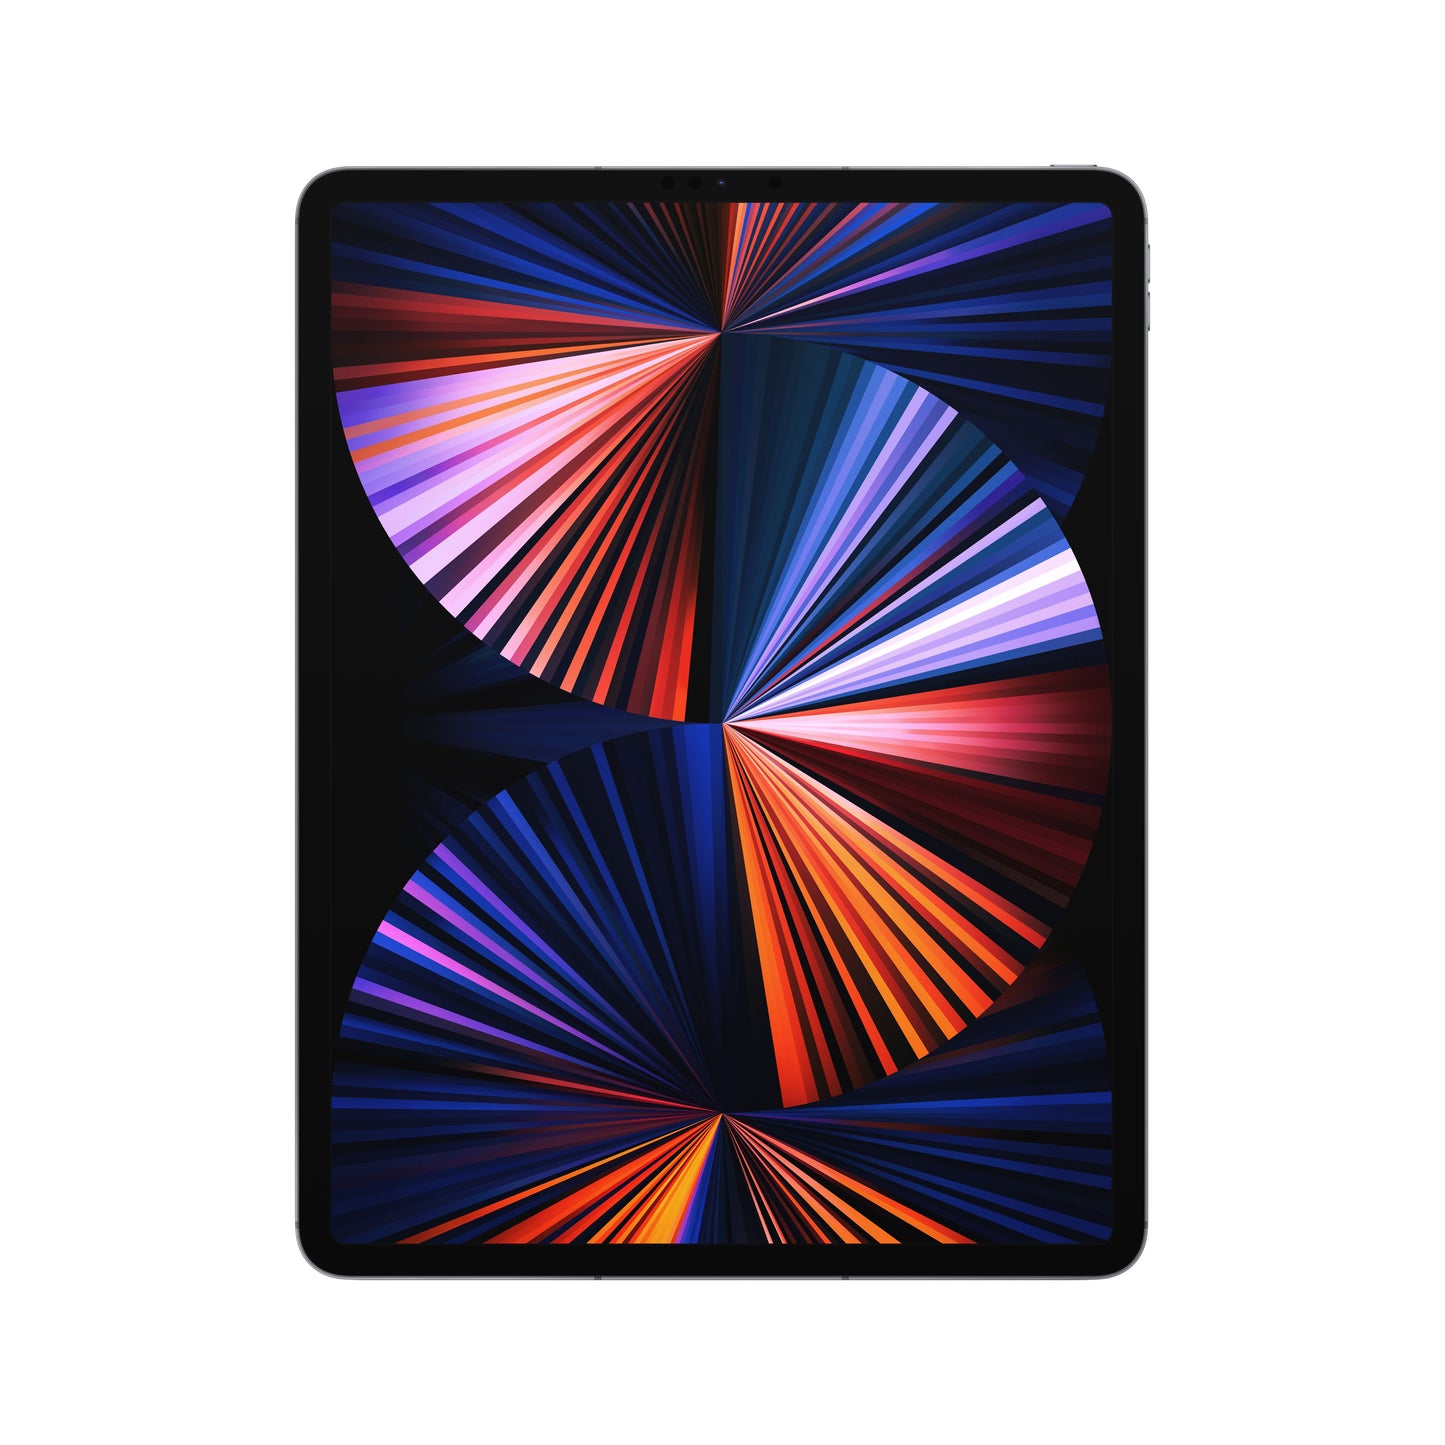 iPad Pro de 12,9 pulgadas, Gris espacial, 512 GB, Wi-Fi + Cellular - Rossellimac